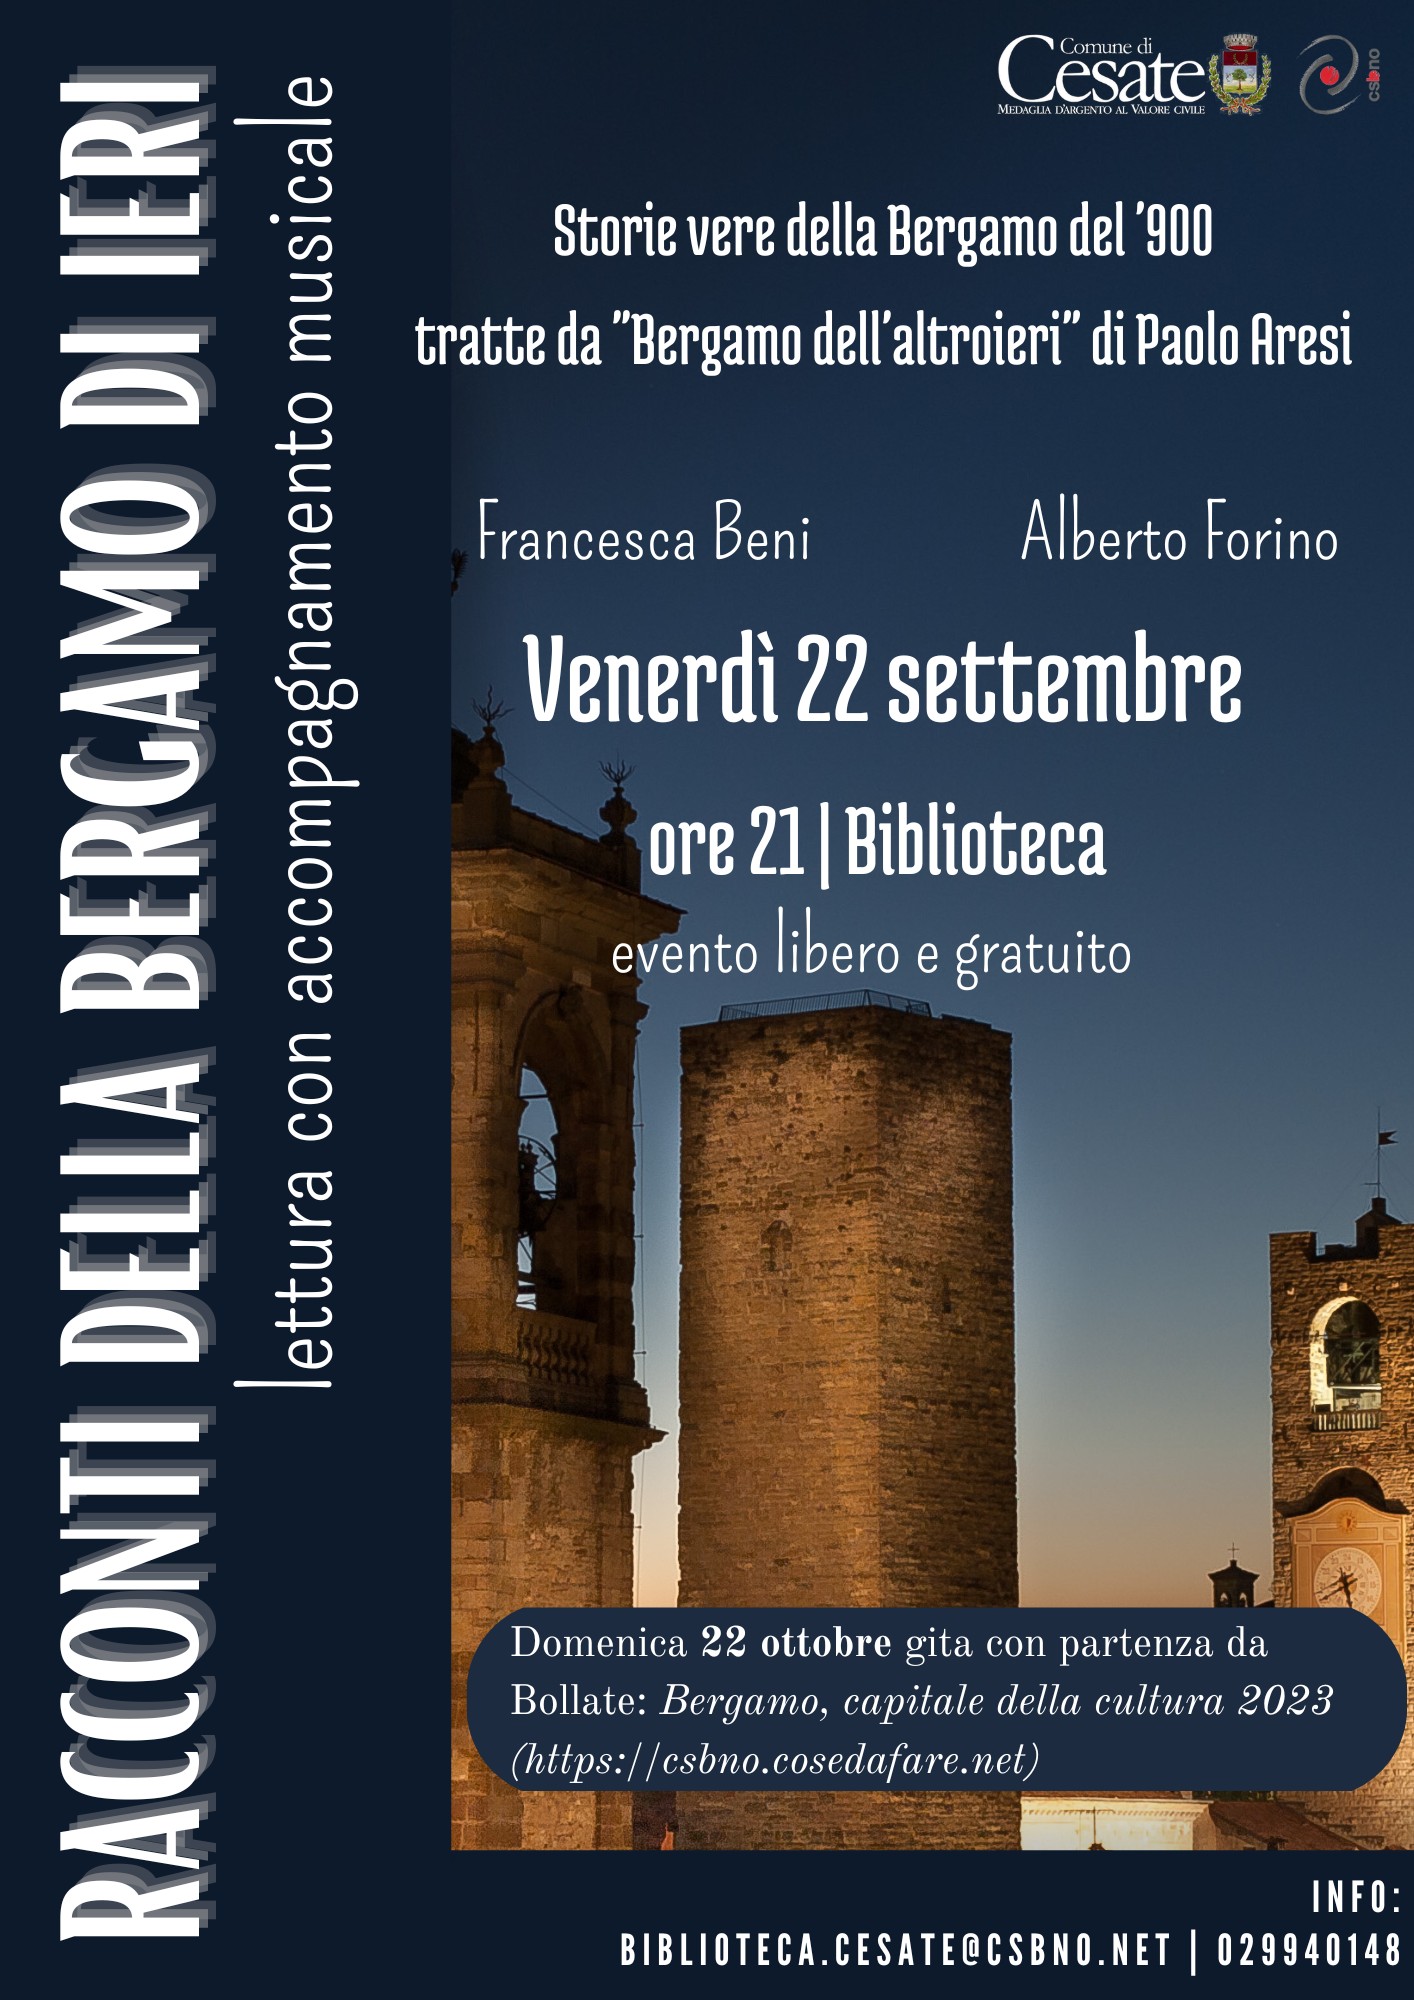 Cesate celebra Bergamo e Brescia Capitali della Cultura